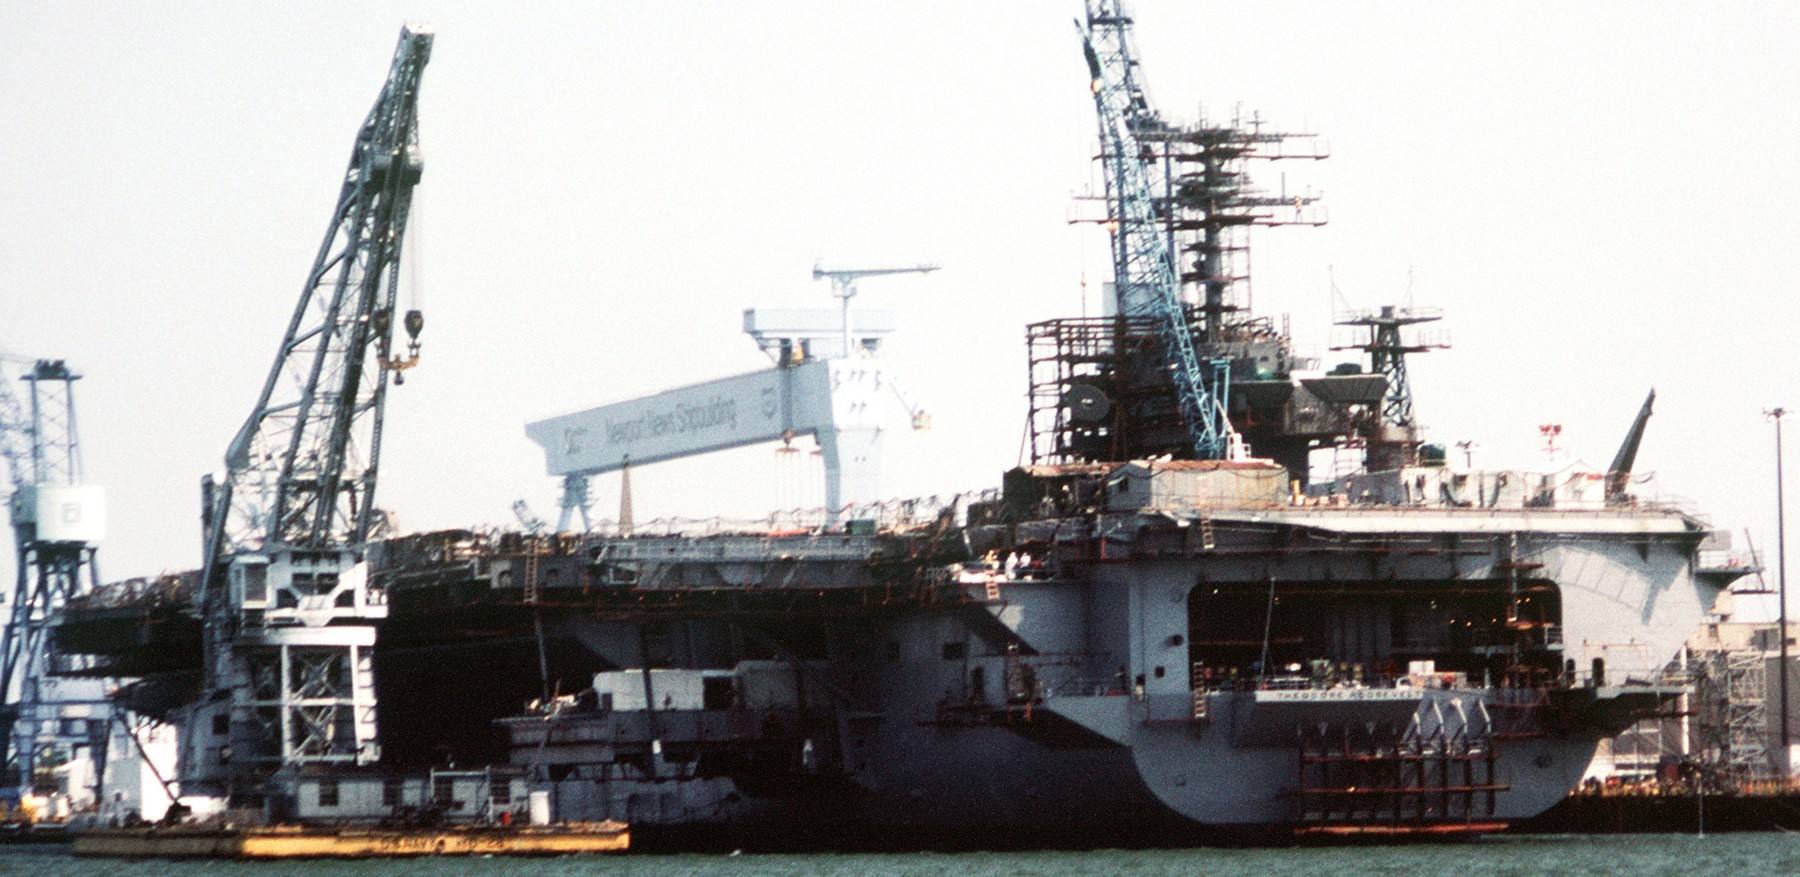 cvn-71 uss theodore roosevelt nimitz class aircraft carrier outfitting newport news shipbuilding 13